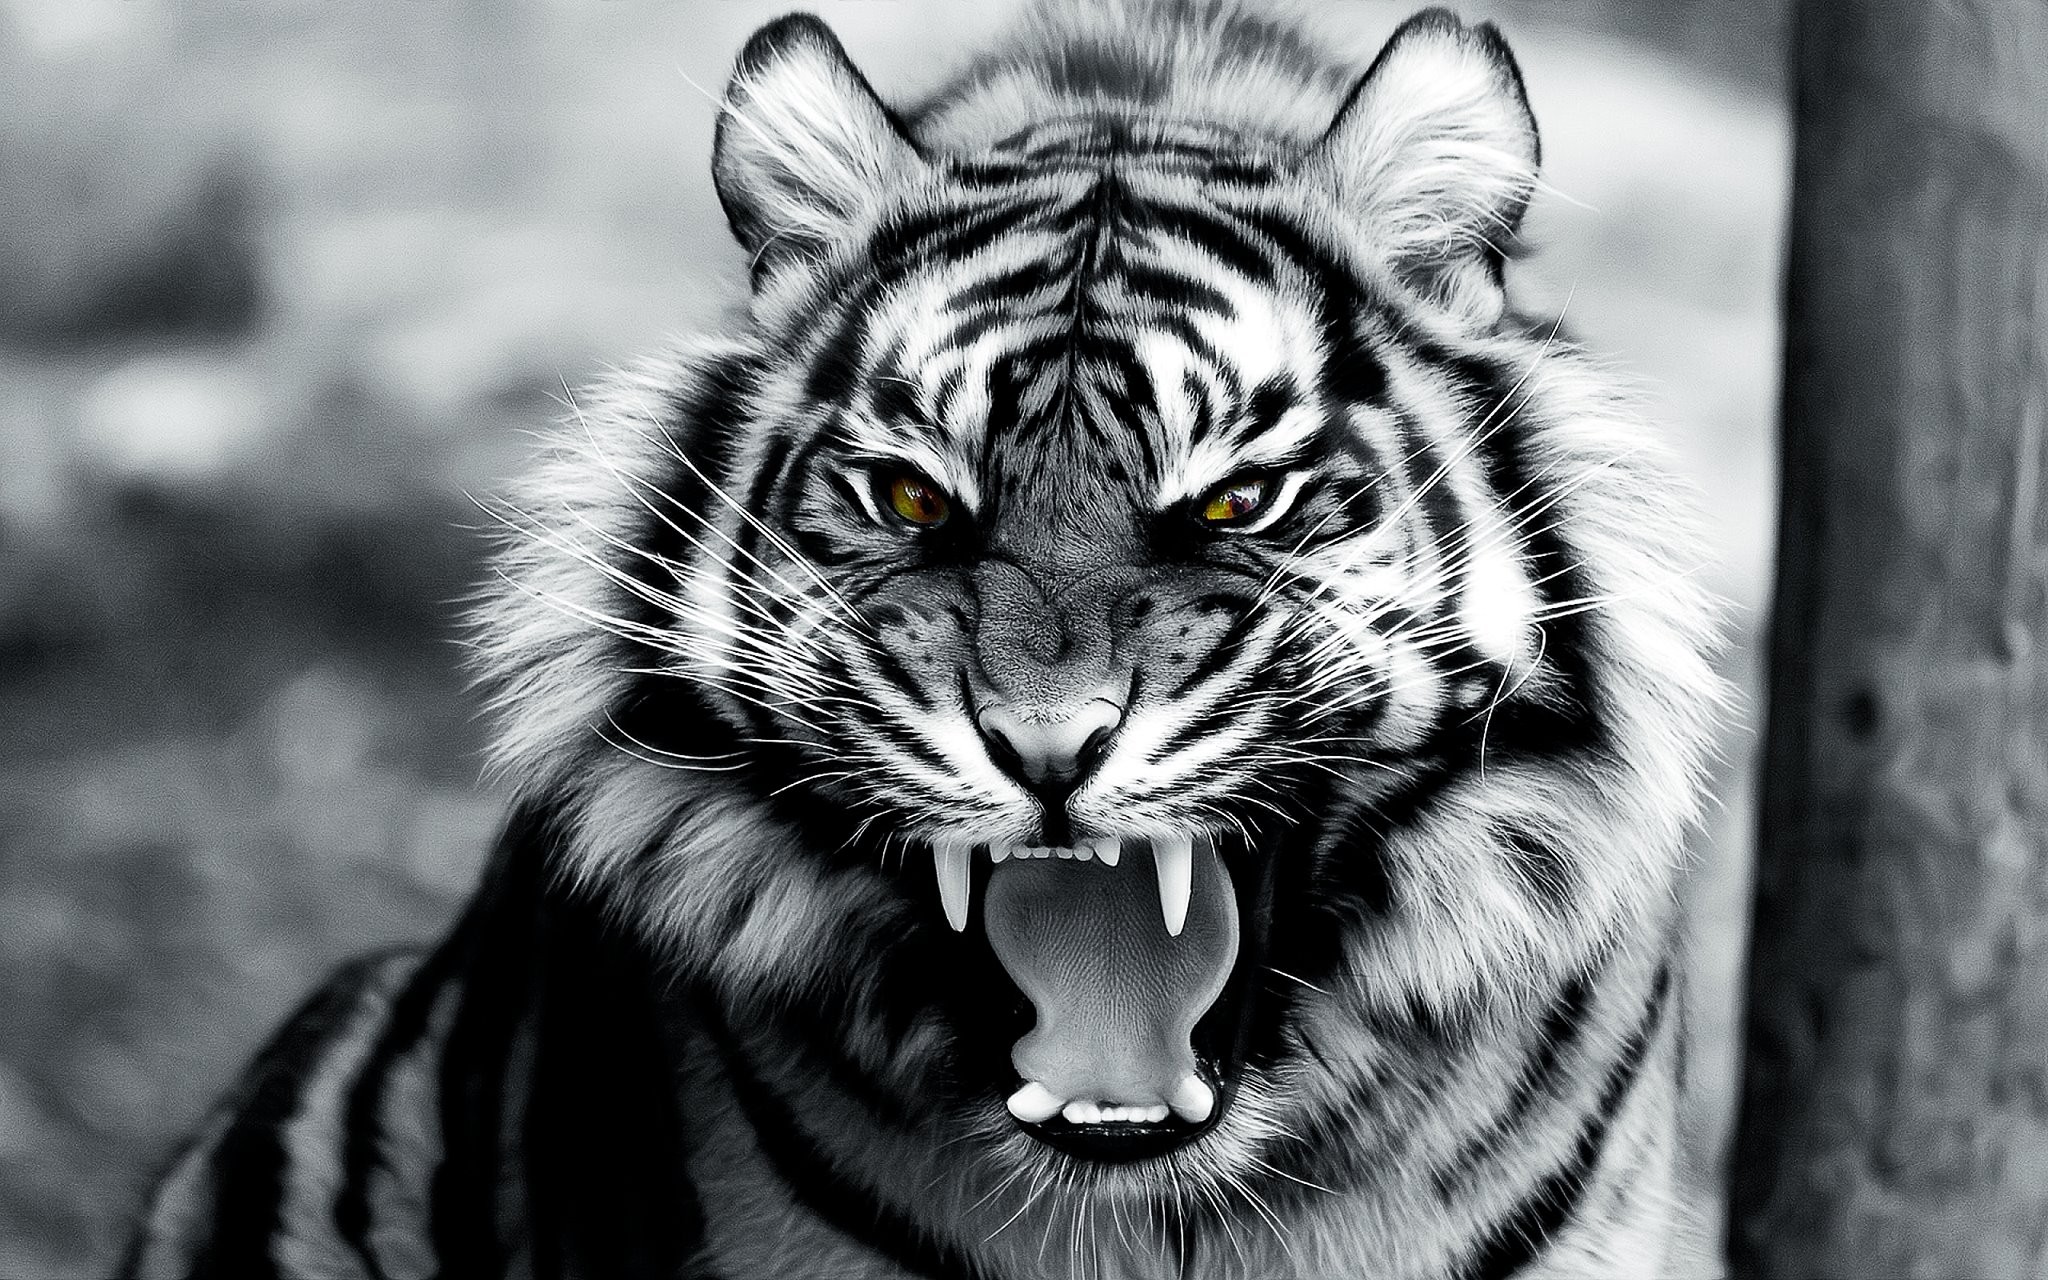 General 2048x1280 animals tiger digital art roar mammals big cats selective coloring